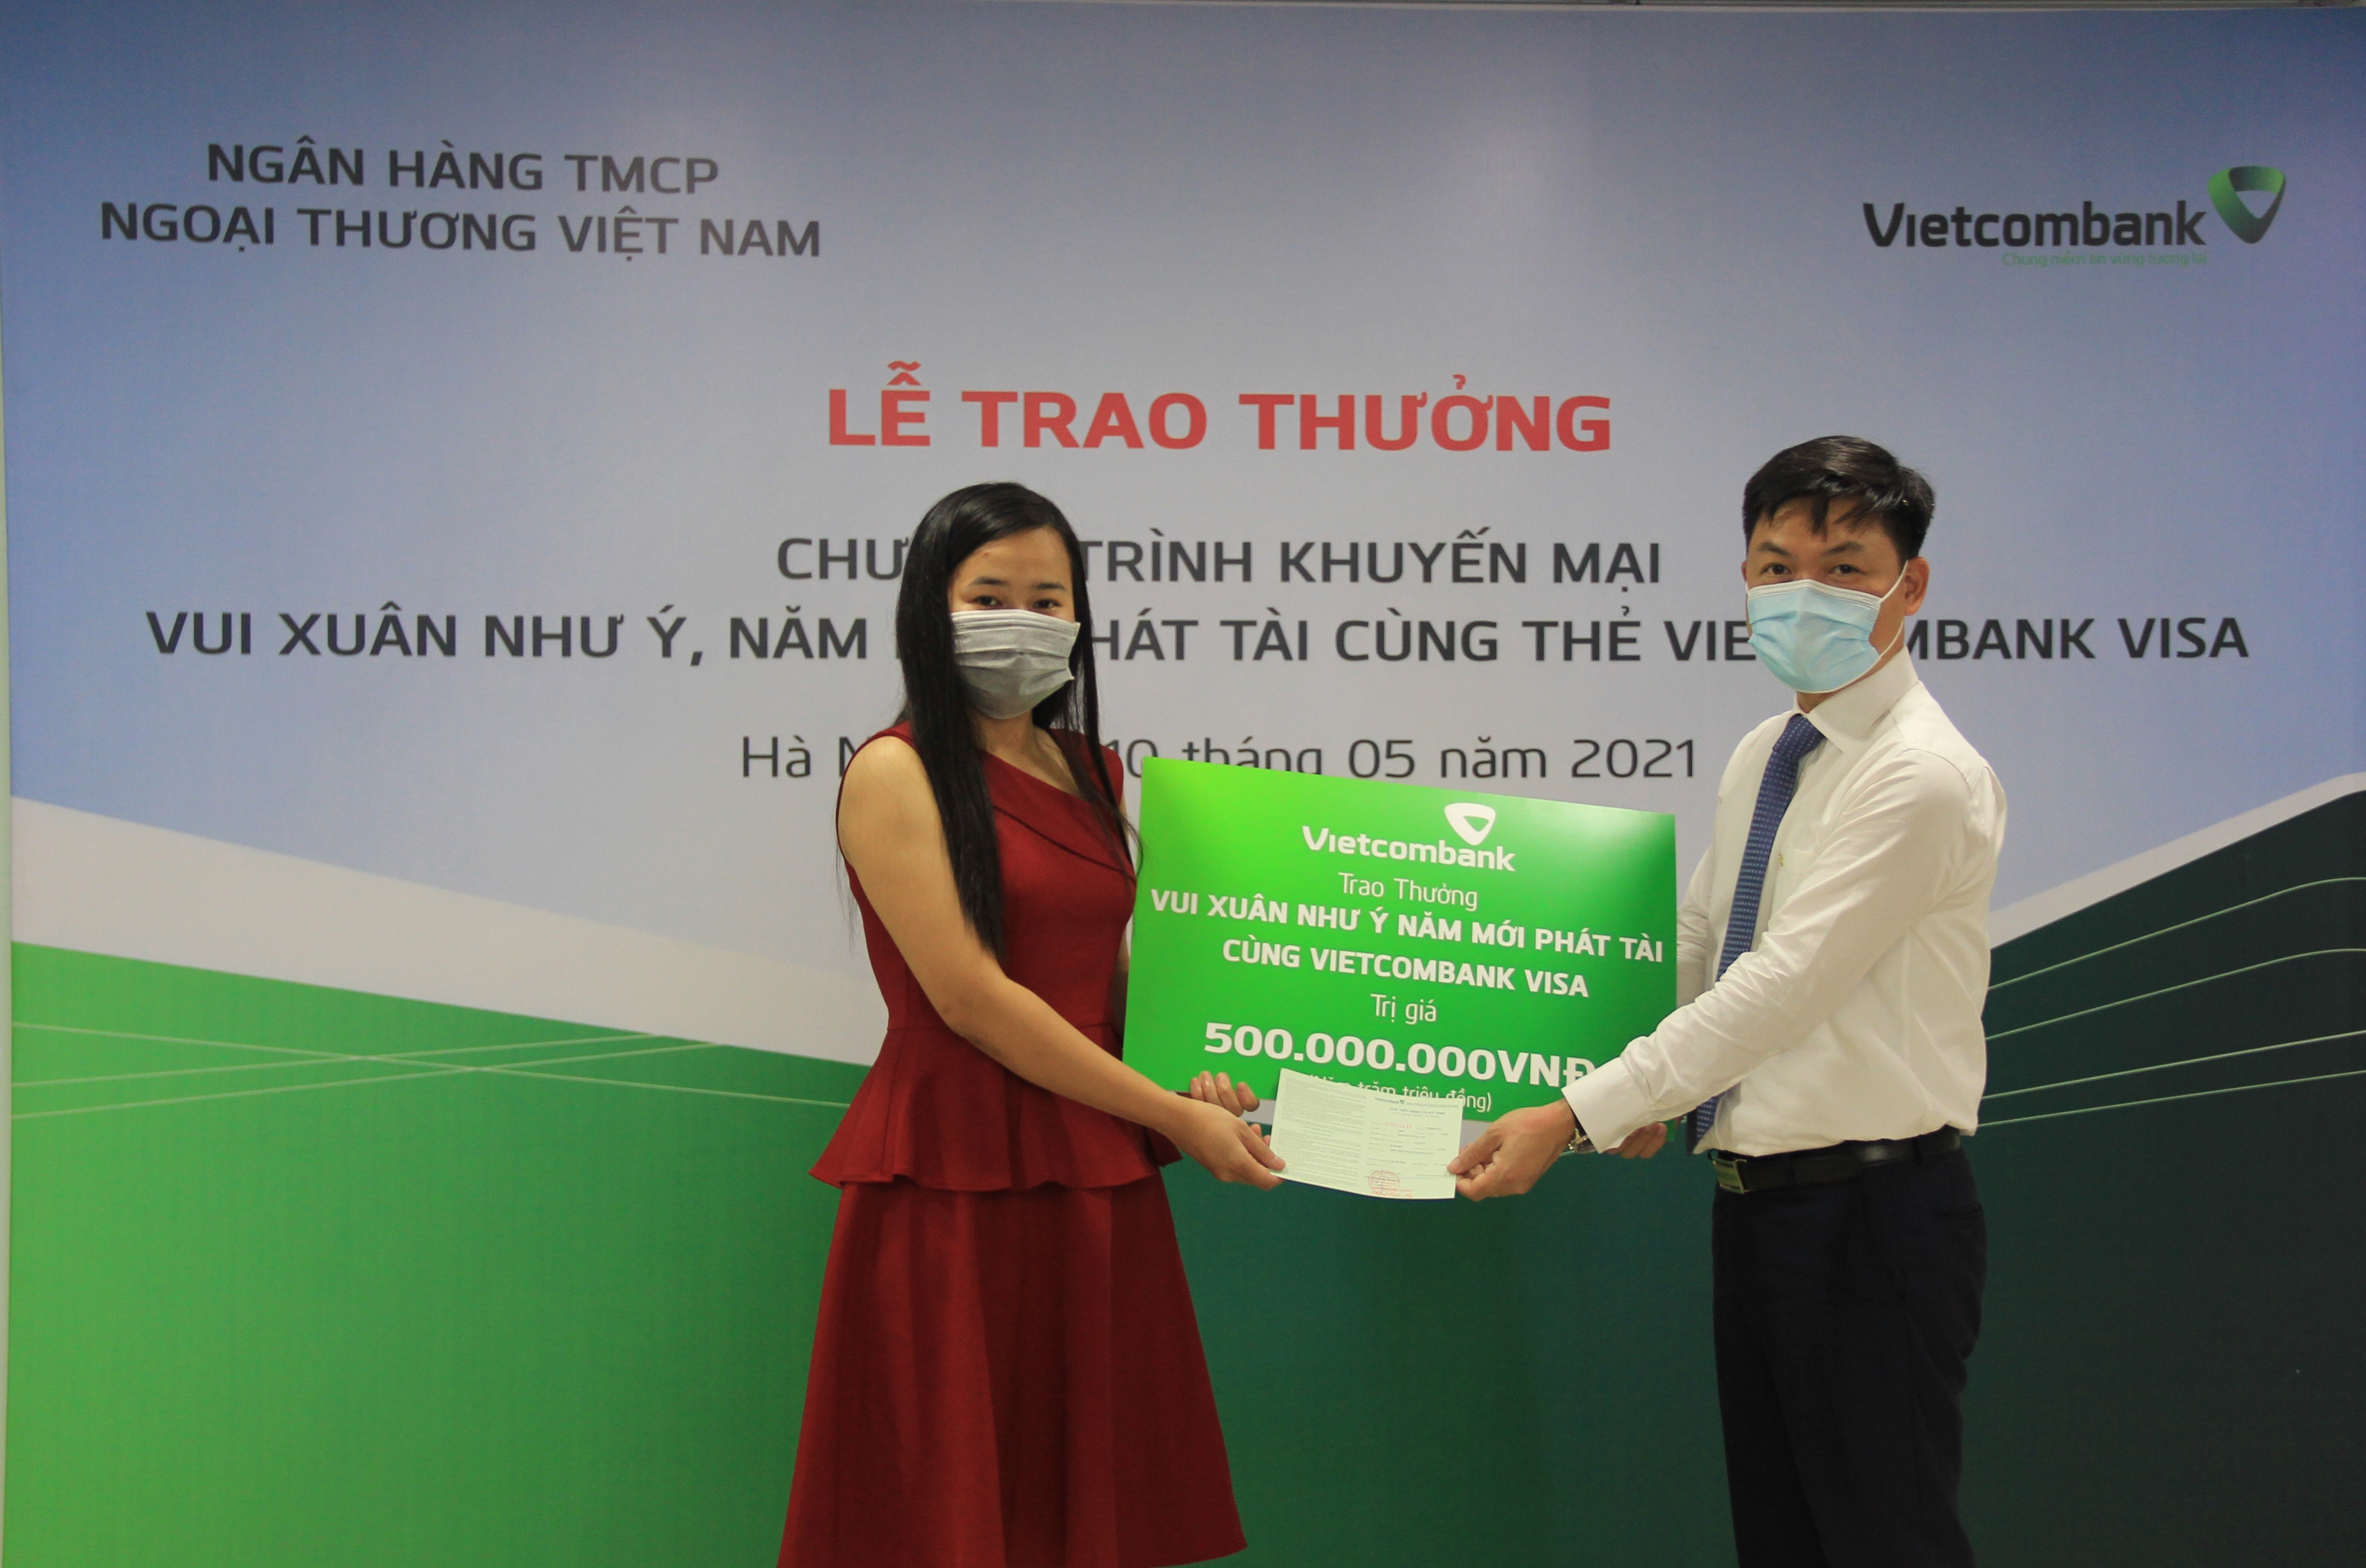 vietcombank trao thuong 500 trieu dong cho khach hang may man